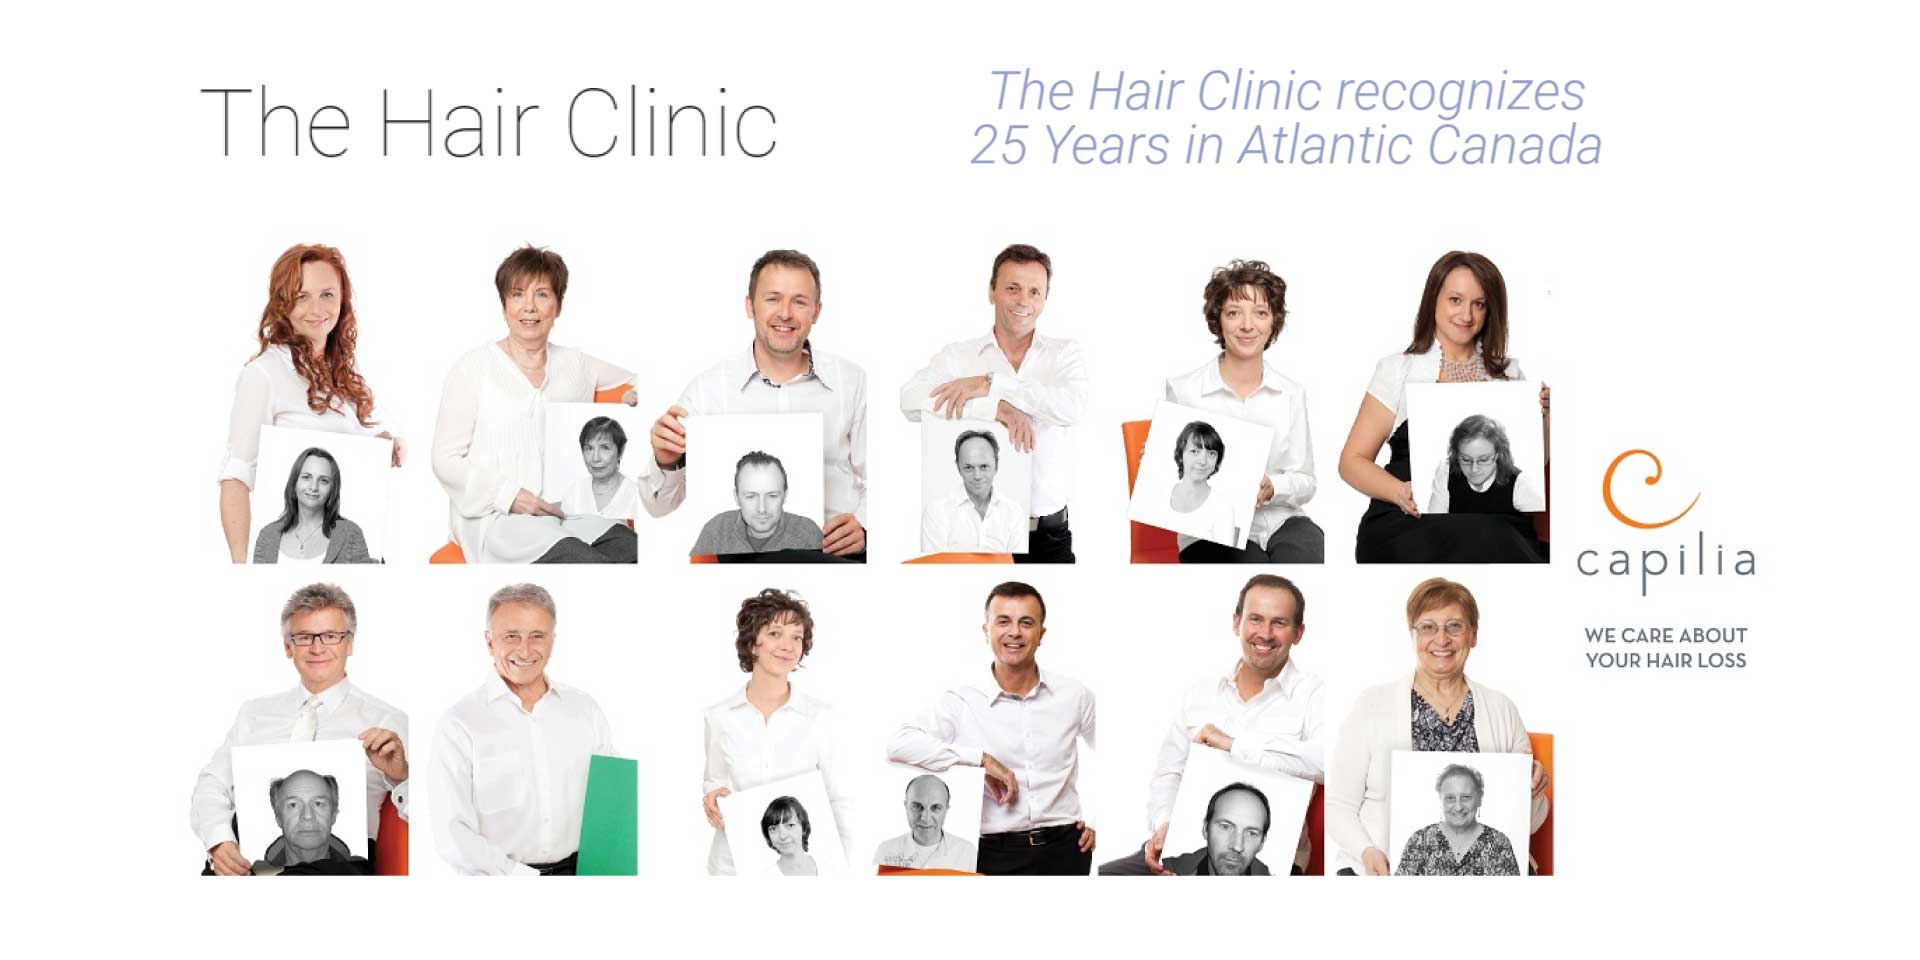 The Hair Clinic